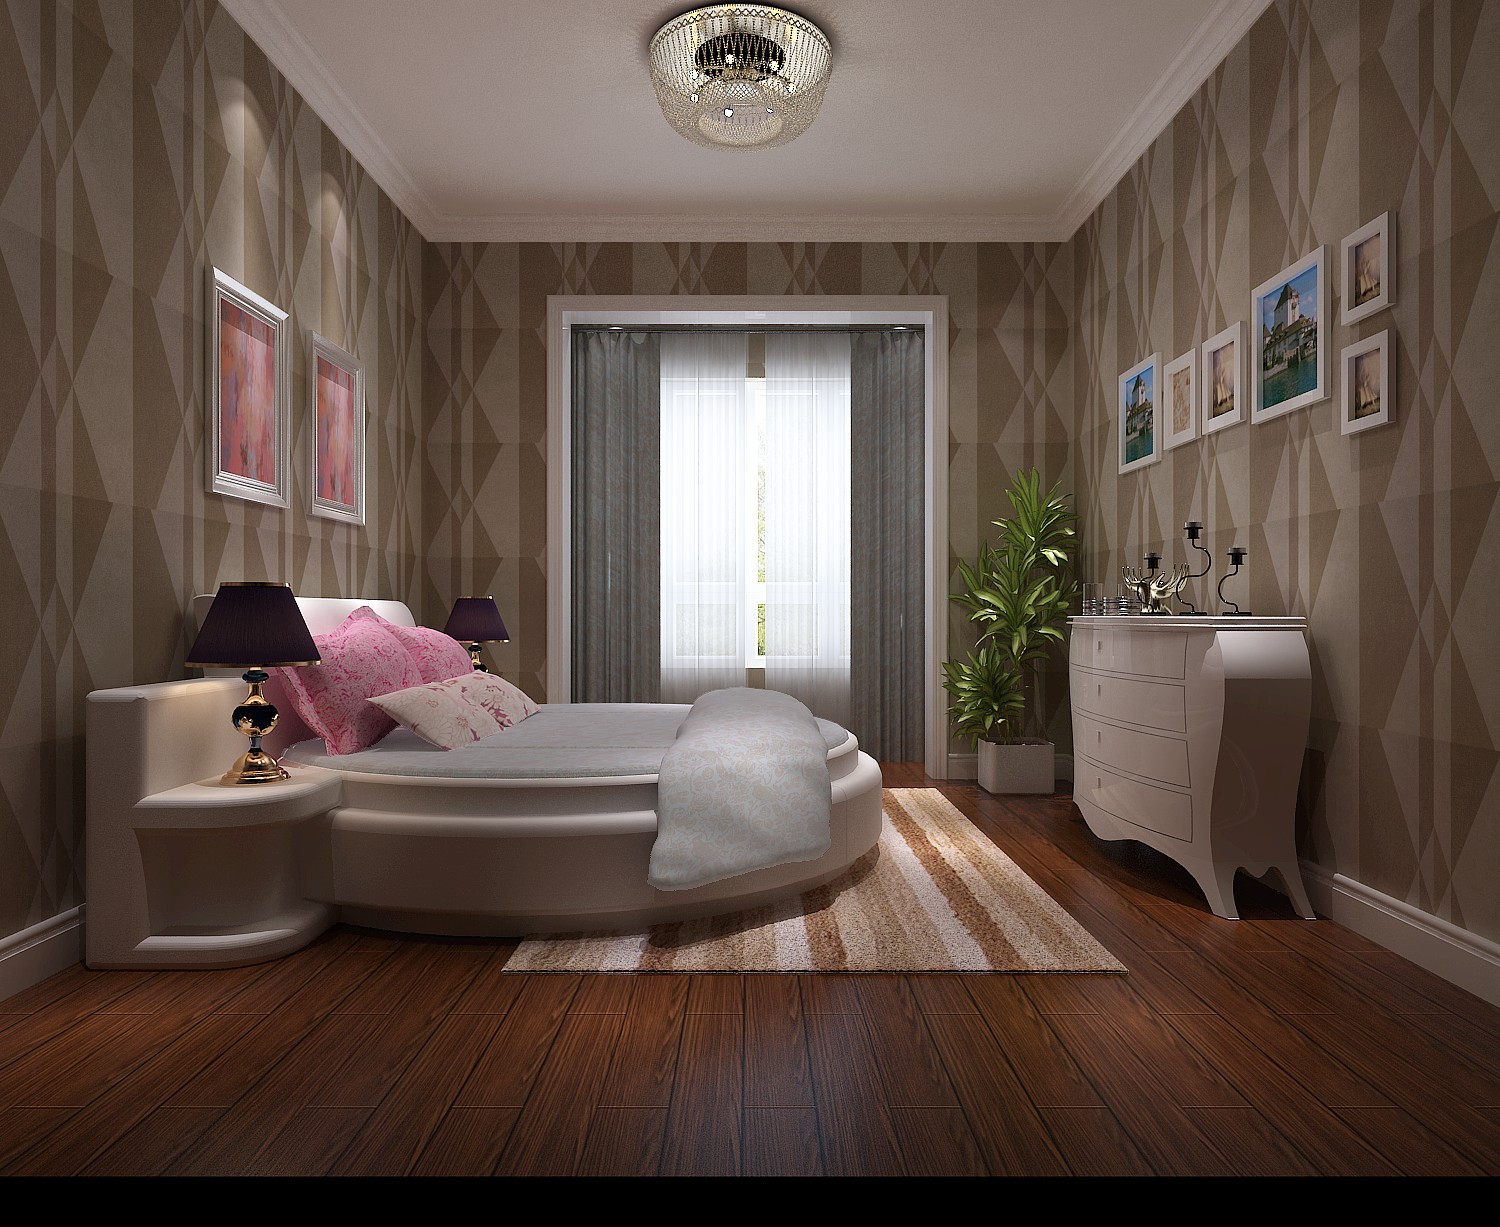 休闲 大气 美式家具 迥然不同 卧室图片来自高度国际装饰刘玉在素雅整洁的休闲家居的分享